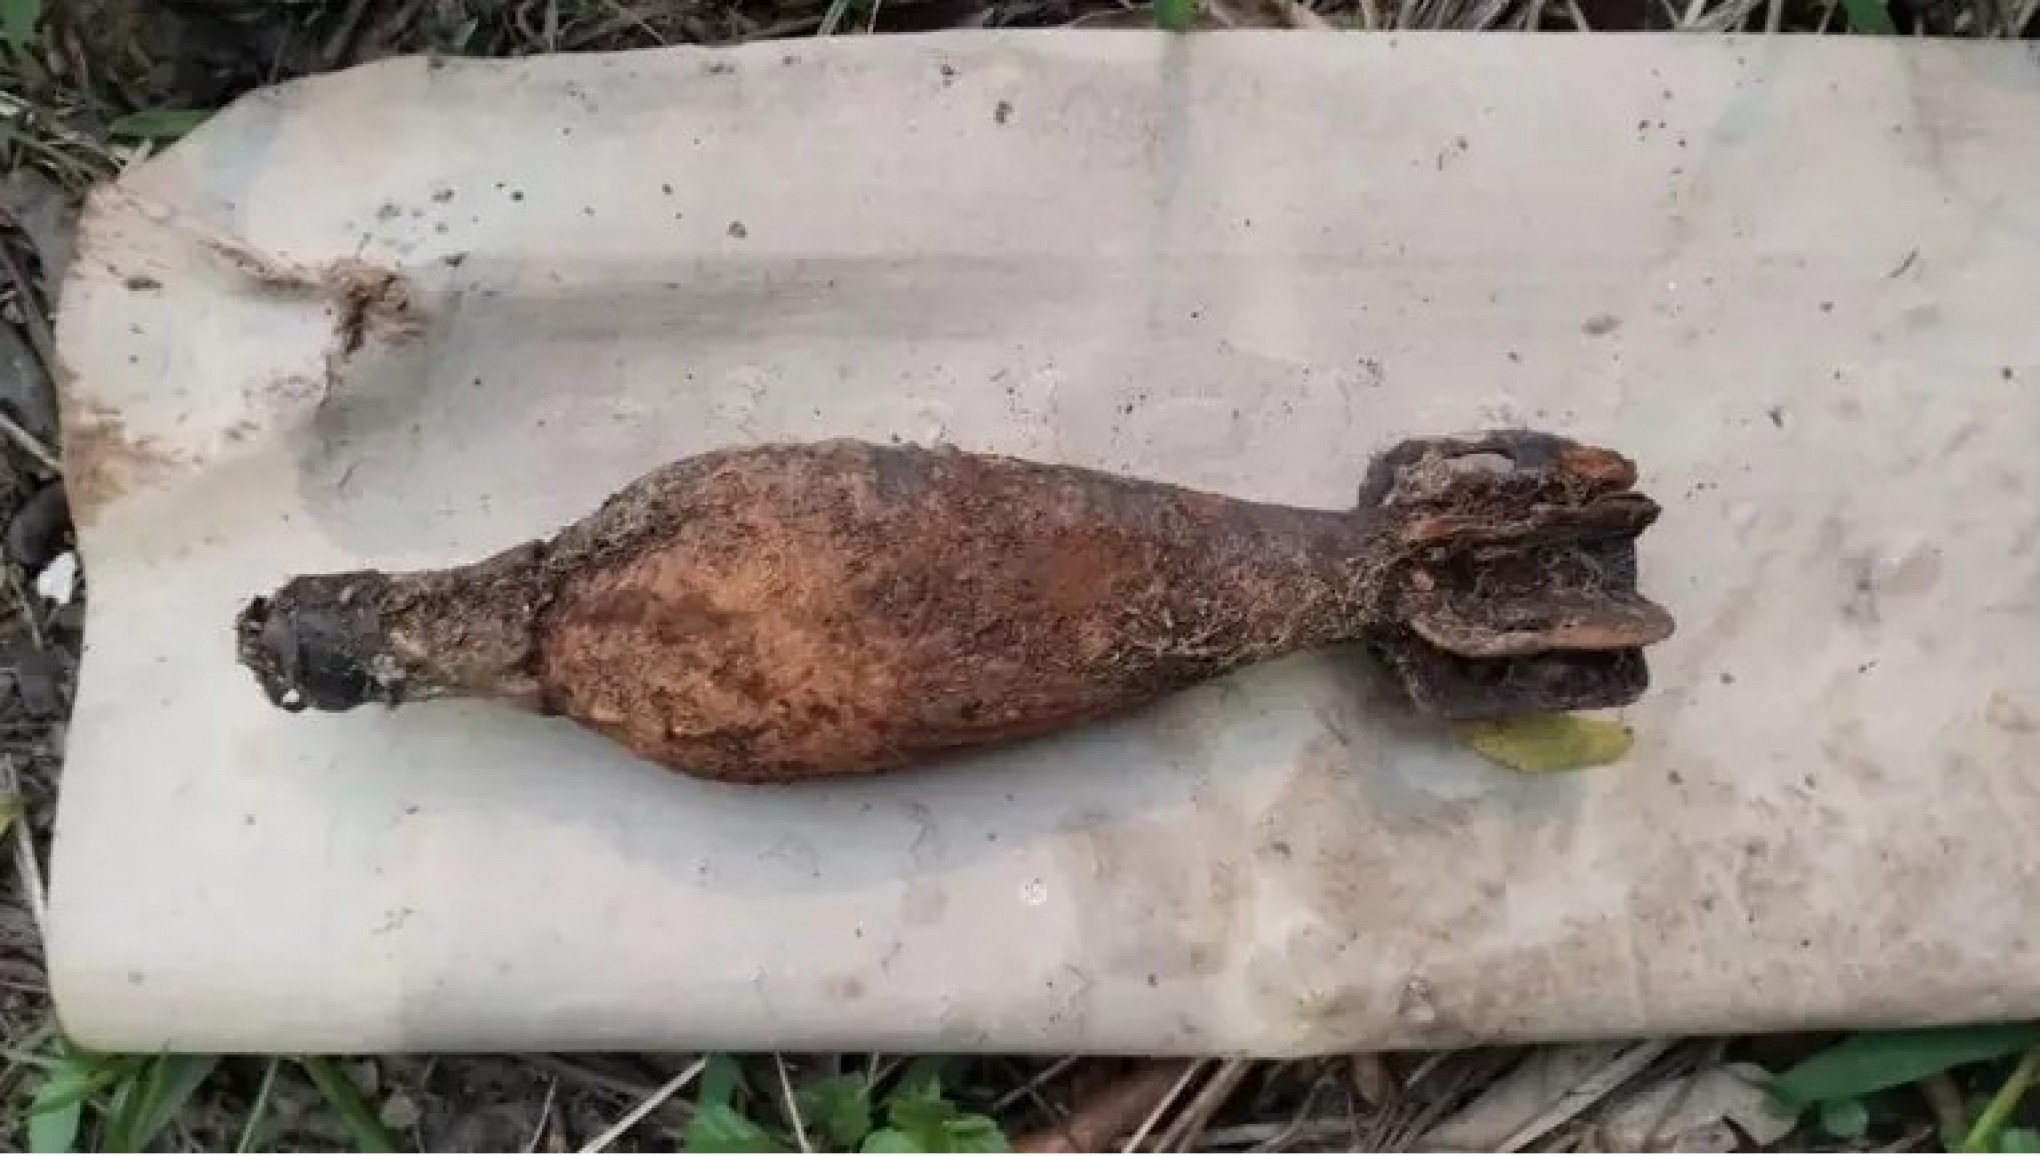 BOMBA: Pescador fisga artefato explosivo no Rio dos Sinos